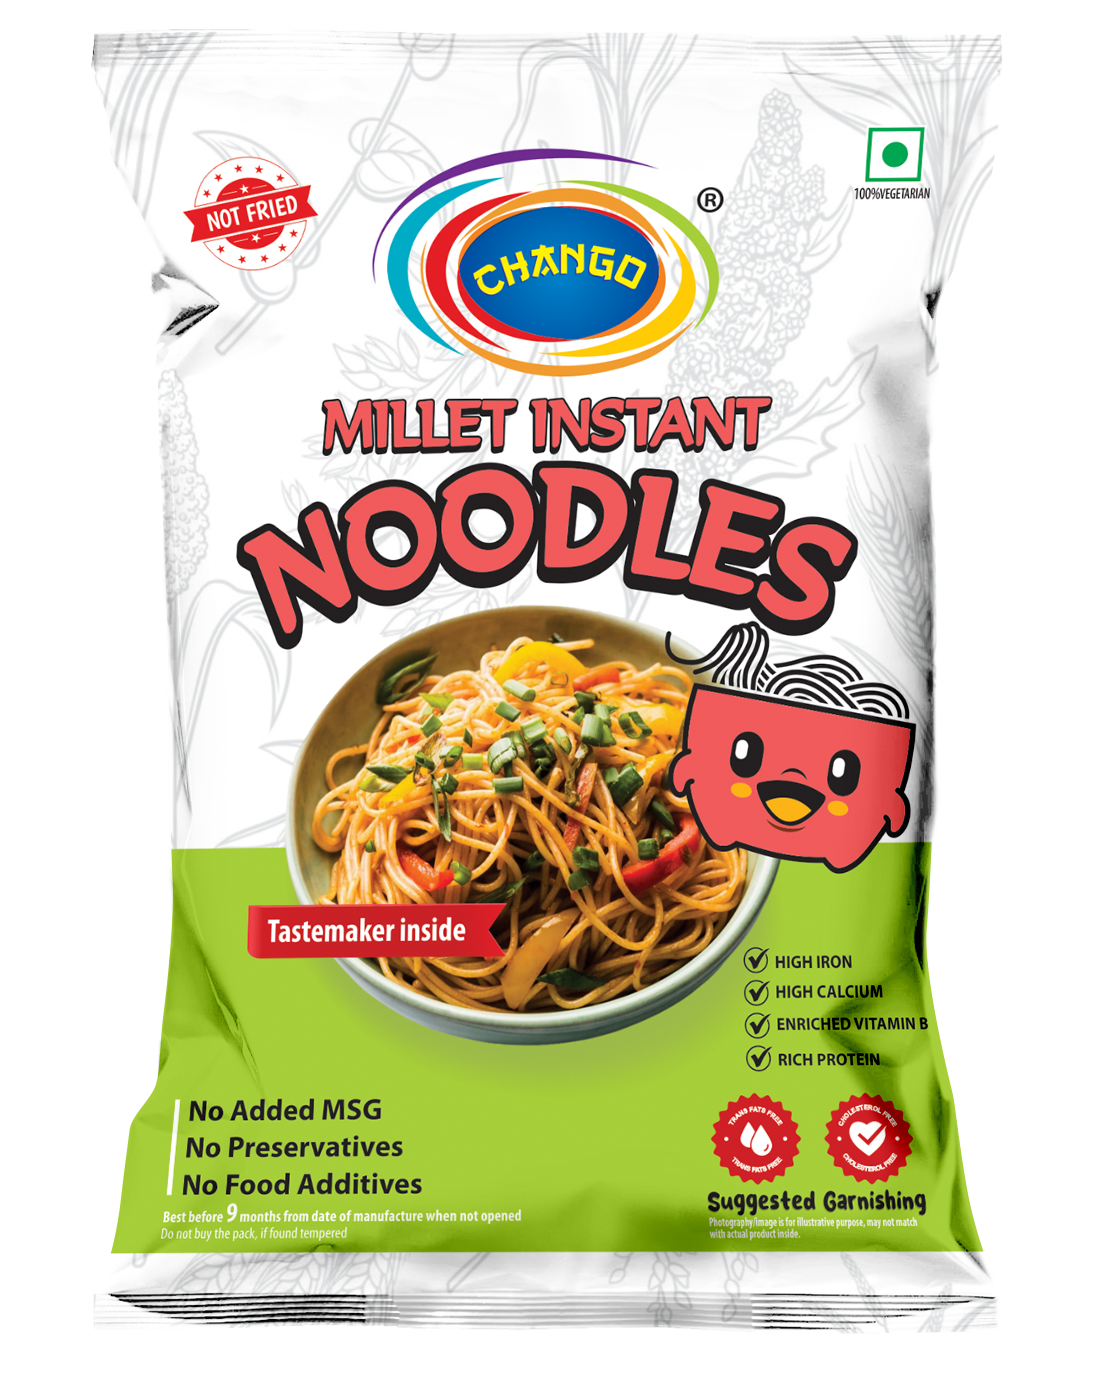 millet instant noodles manufacturers